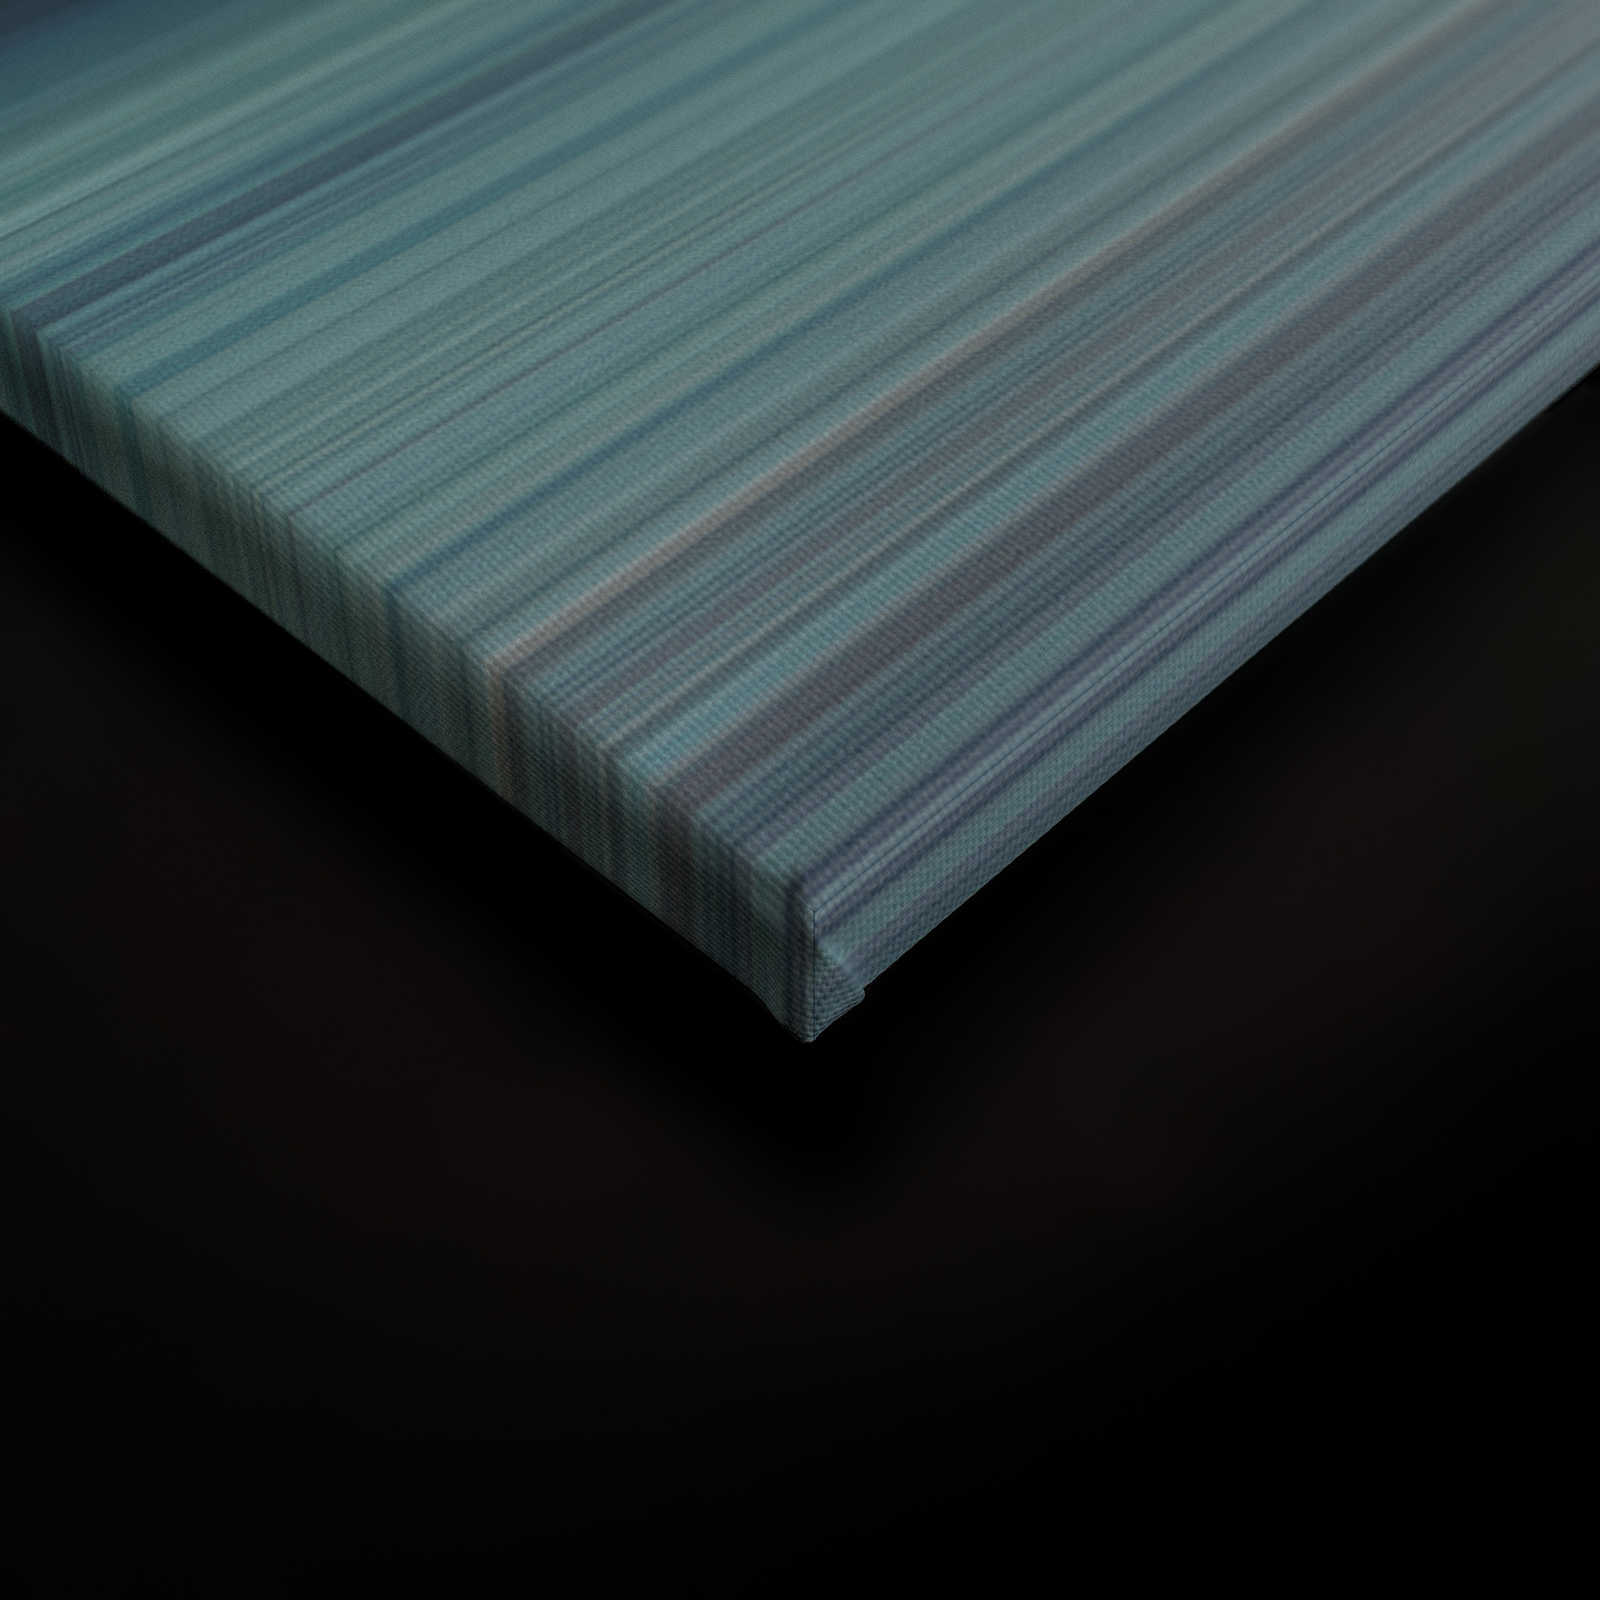             Horizon 1 - Leinwandbild abstrakte Landschaft in Blau – 1,20 m x 0,80 m
        